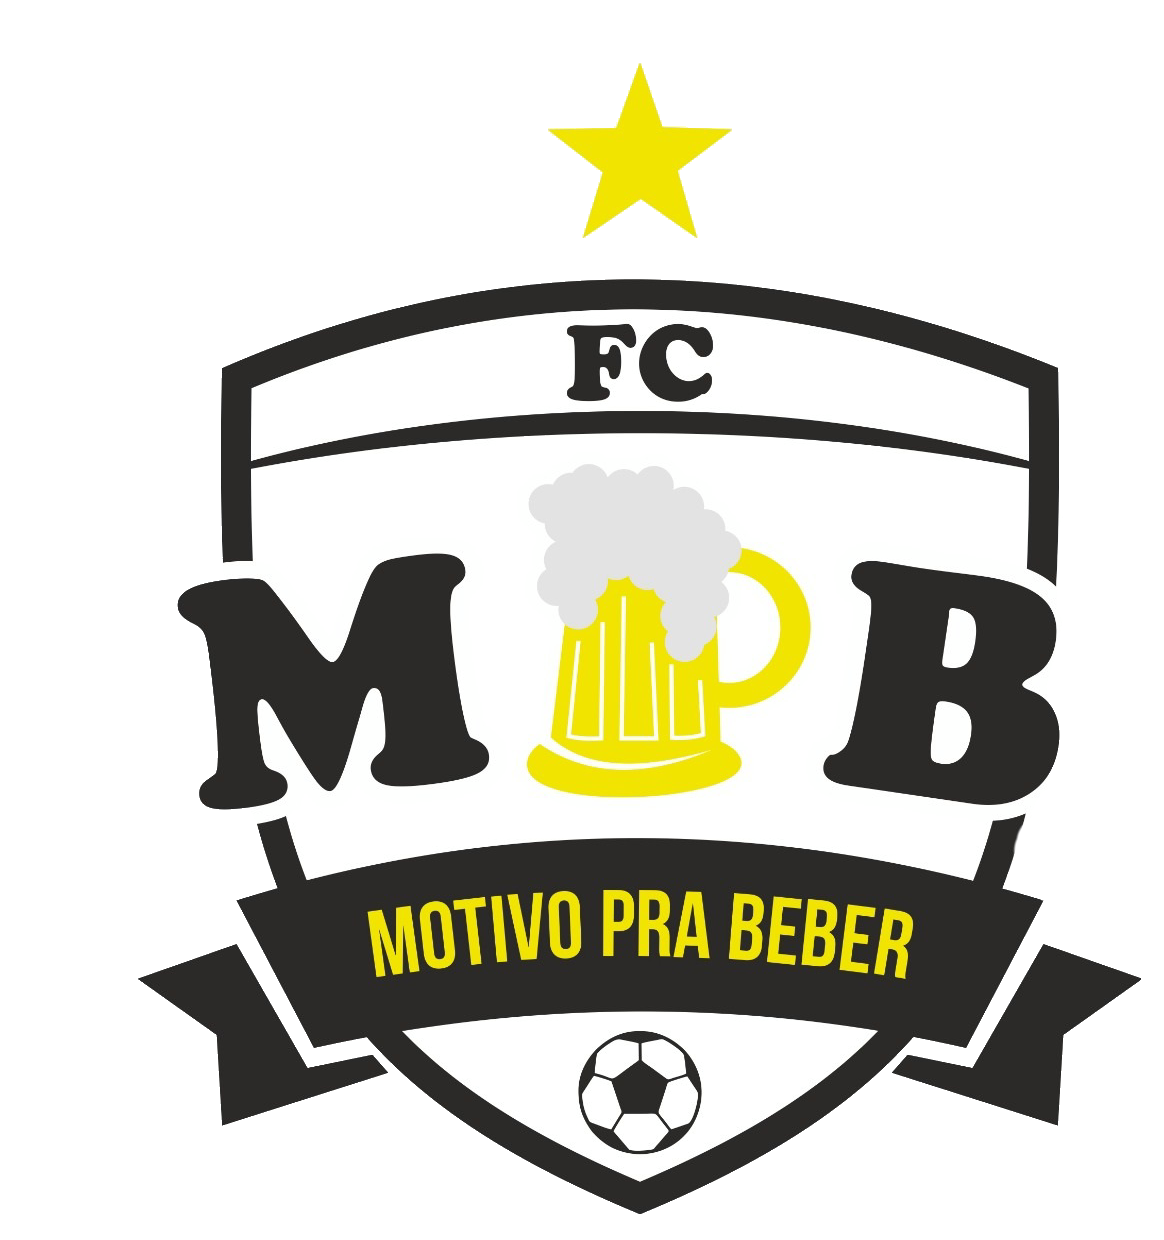 MOTIVO PRA BEBER FC